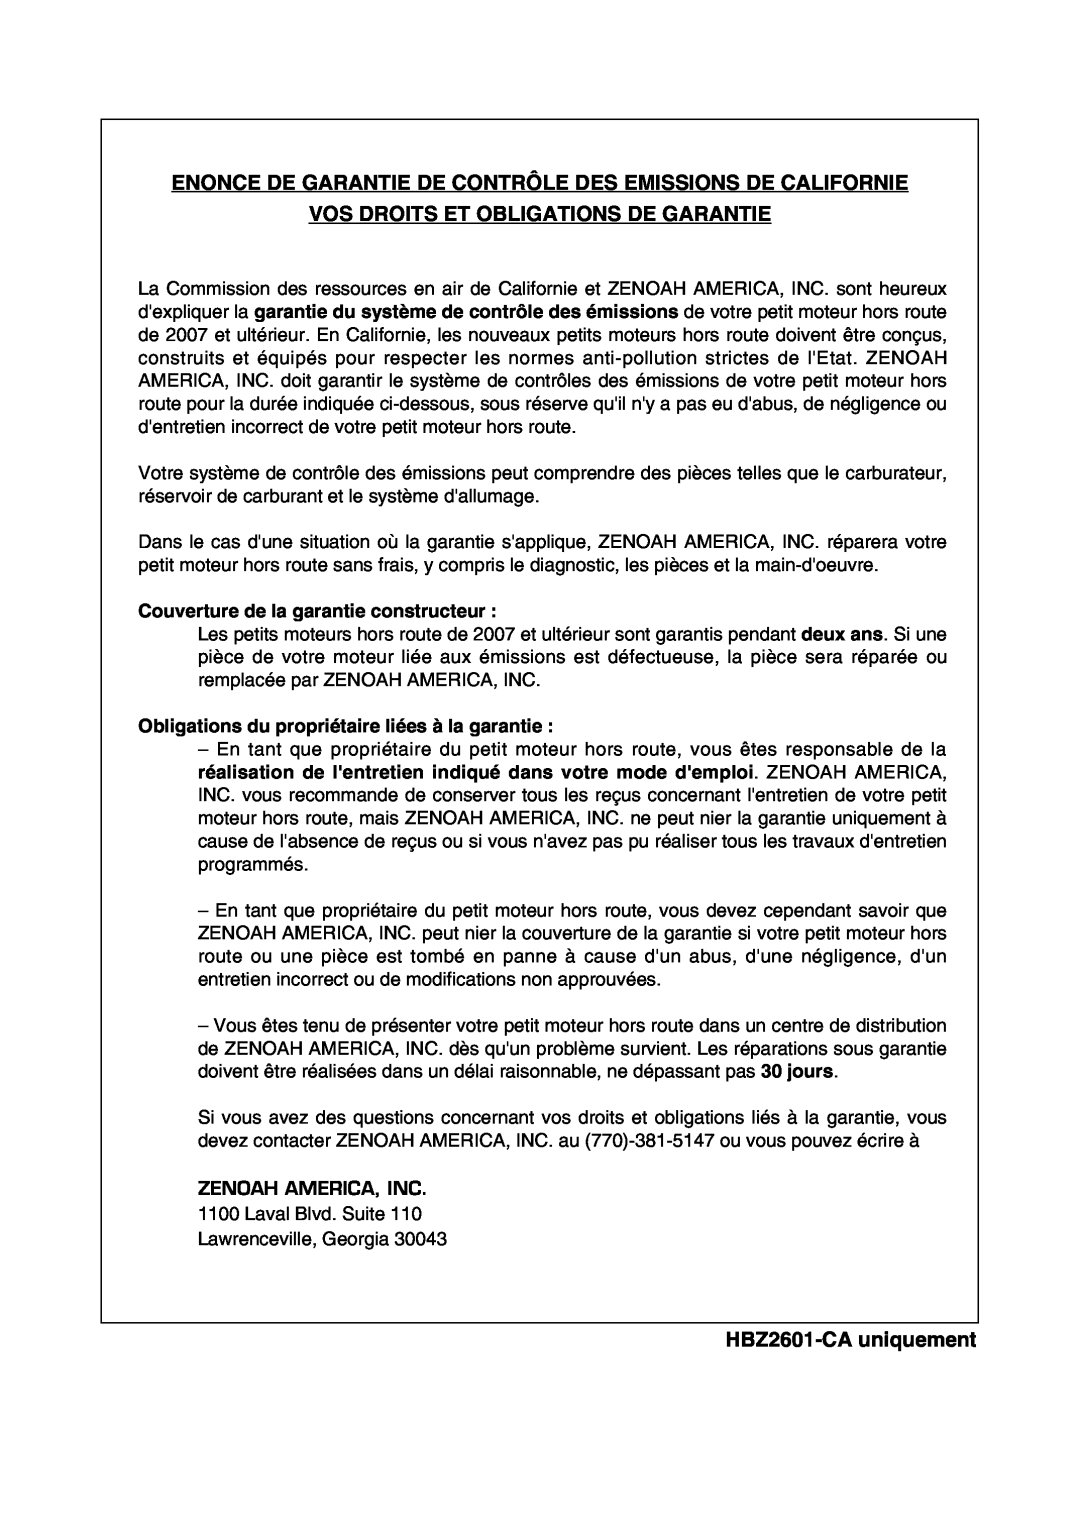 Zenoah HBZ2601-CA manual Enonce De Garantie De Contrôle Des Emissions De Californie, Vos Droits Et Obligations De Garantie 